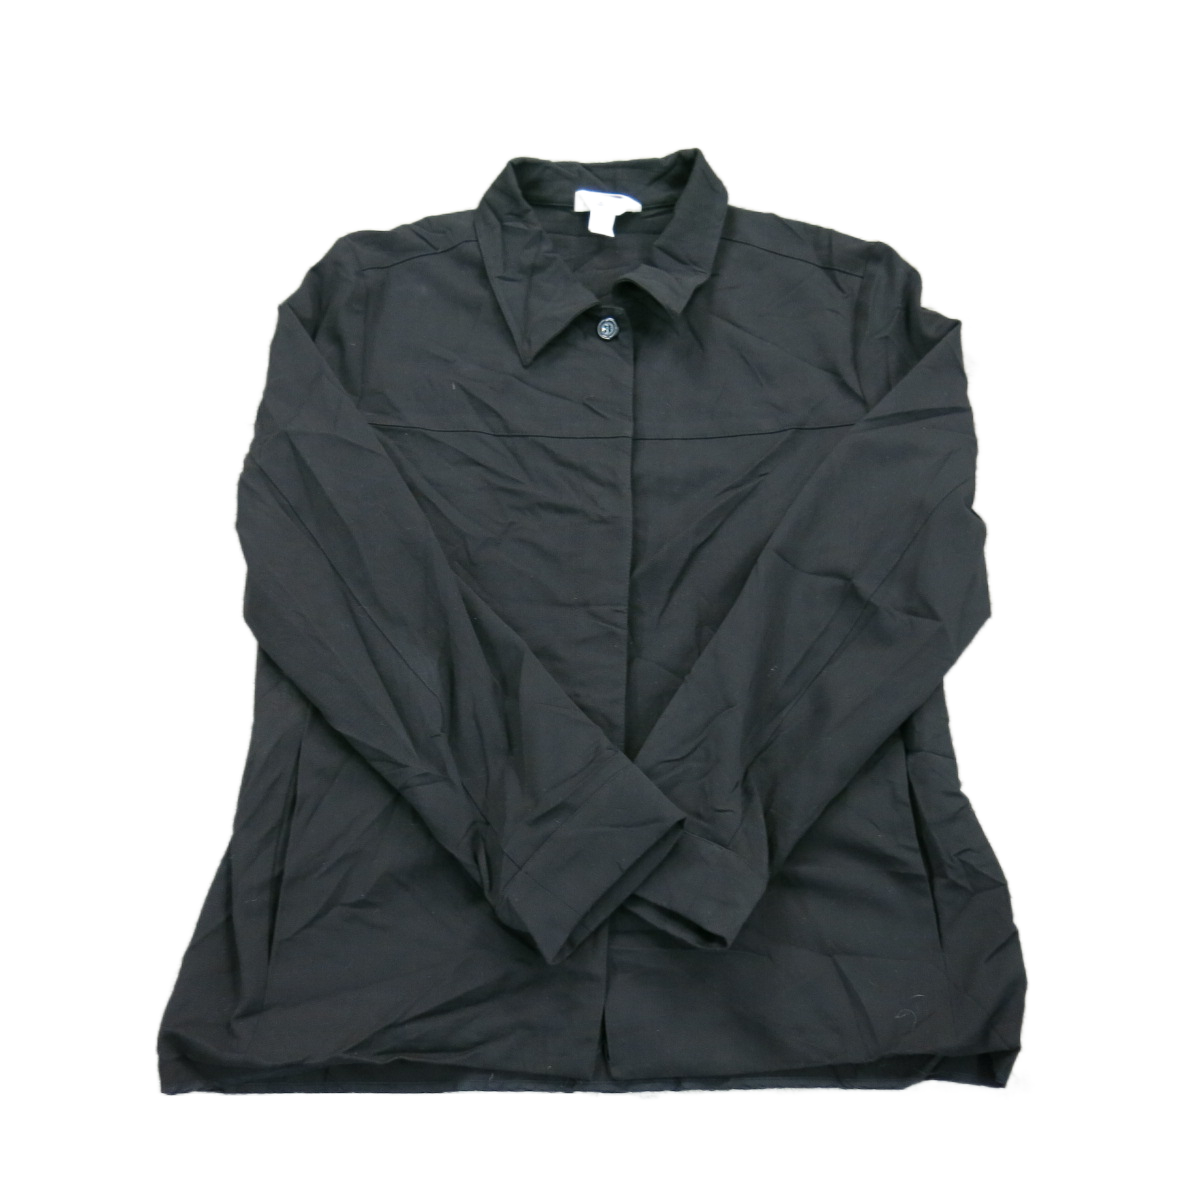 Talbots women's black and white swing jacket. Size medium